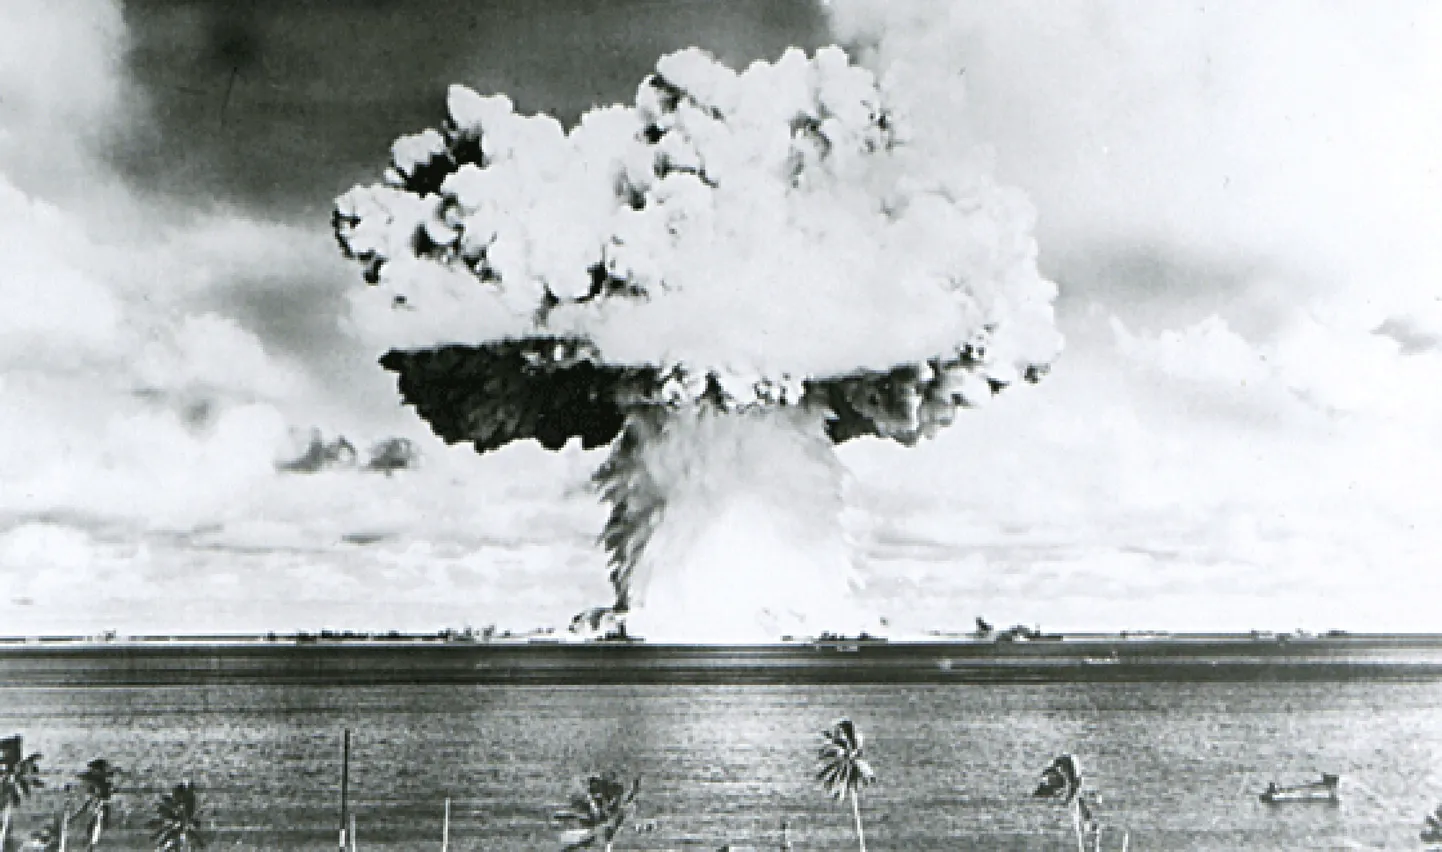 ASV kodolizmēģinājums Bikini atolā 1946. gadā